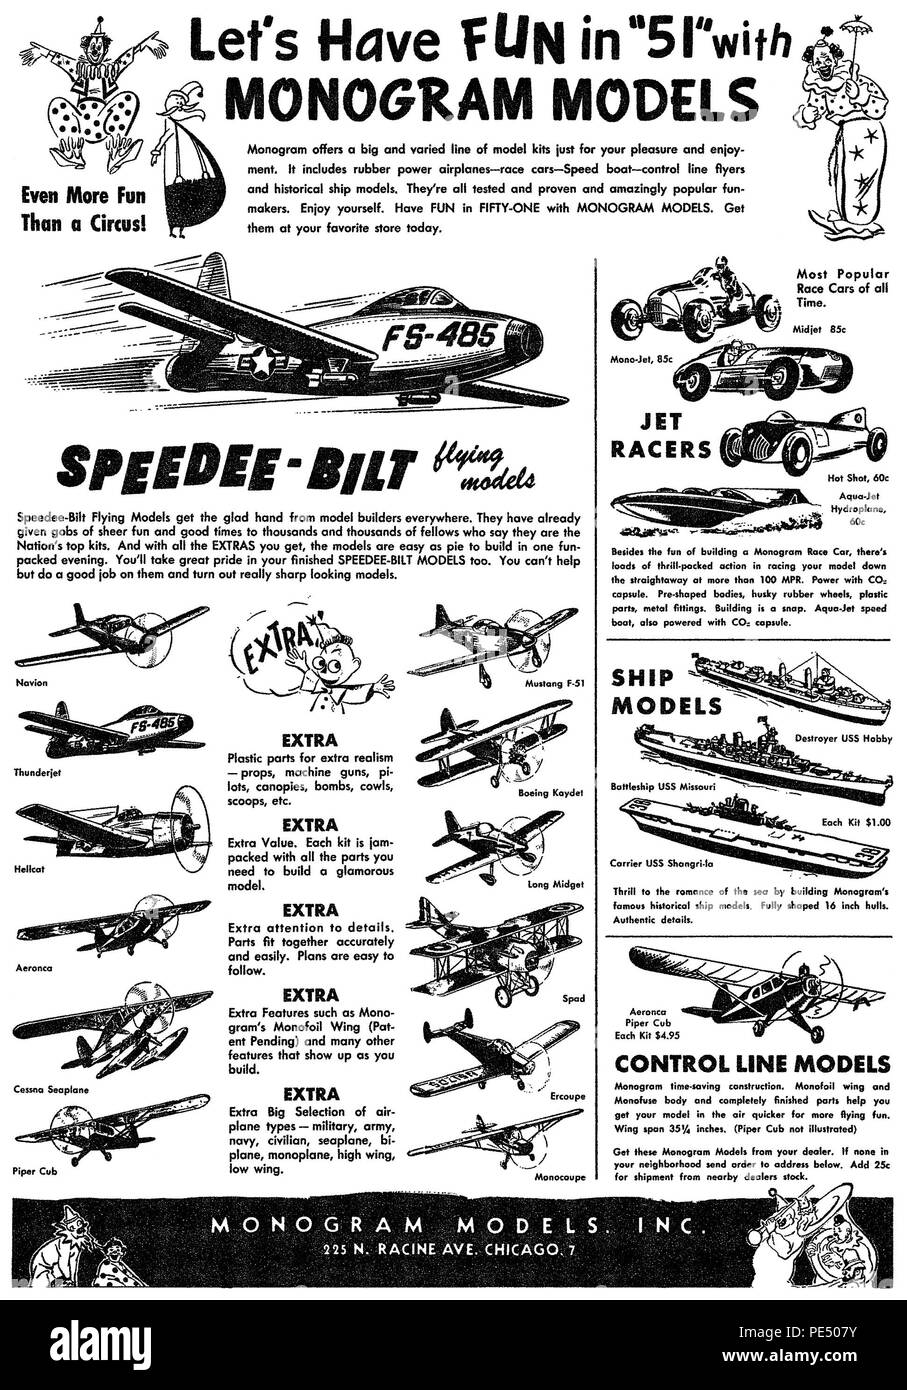 1951 US-Werbung für Monogramm Modellbau. Stockfoto